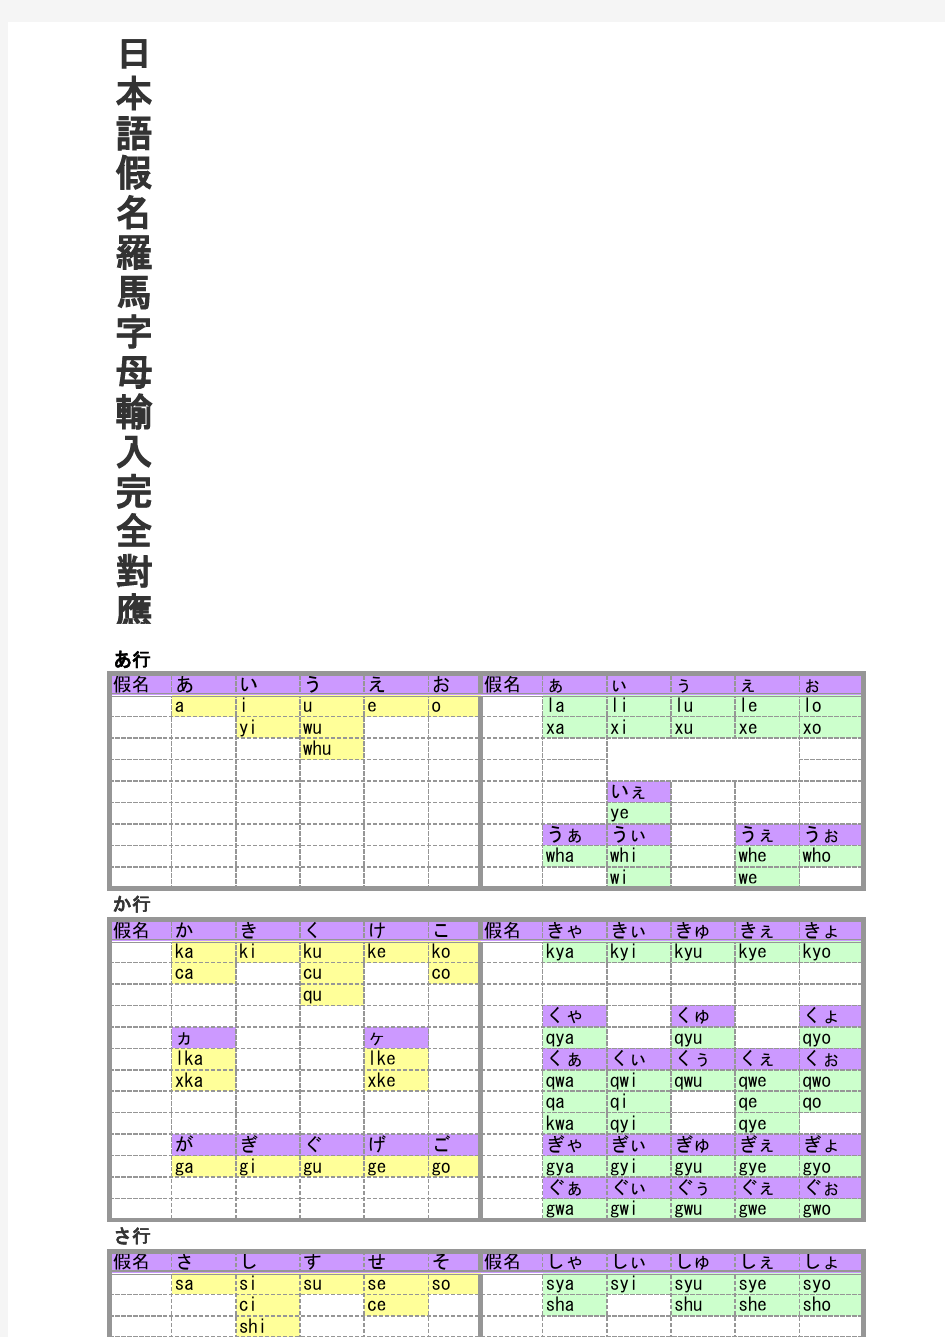 日本语假名罗马字母输入完全对应表